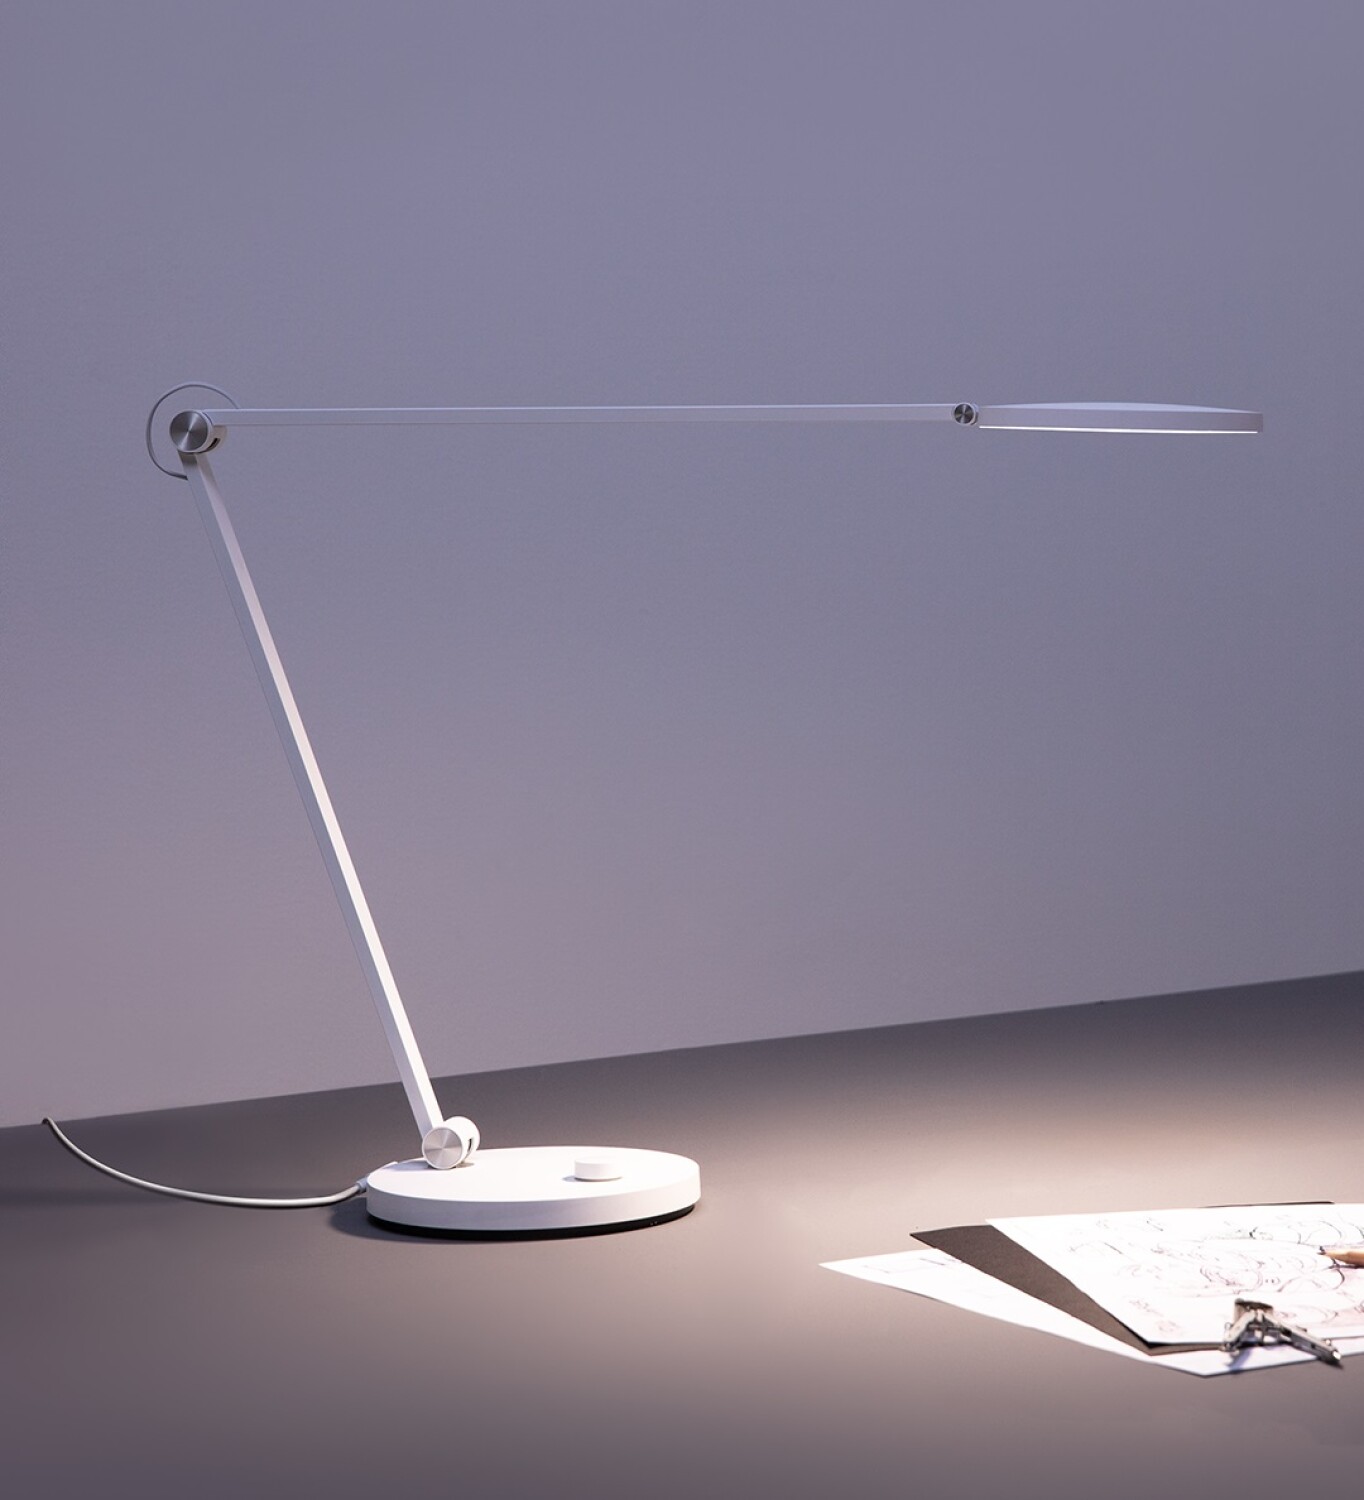 MI SMART LED DESK LAMP PRO XIAOMI  LAMPARA DE ESCRITORIO SMART - Blanco —  Cover company